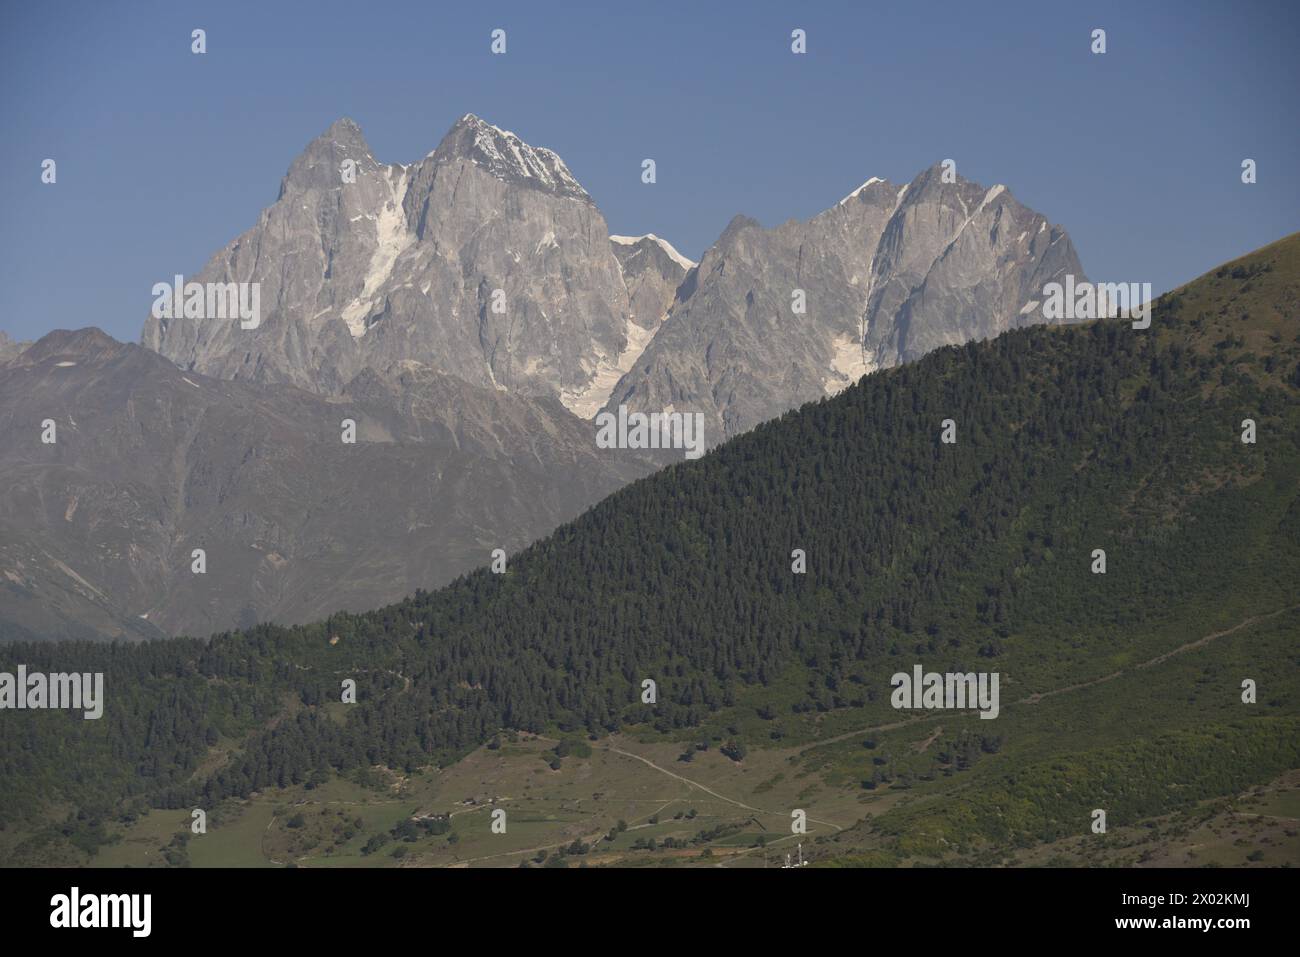 Greater Caucasus Mountains, Svaneti region, Georgia, Central Asia, Asia Stock Photo